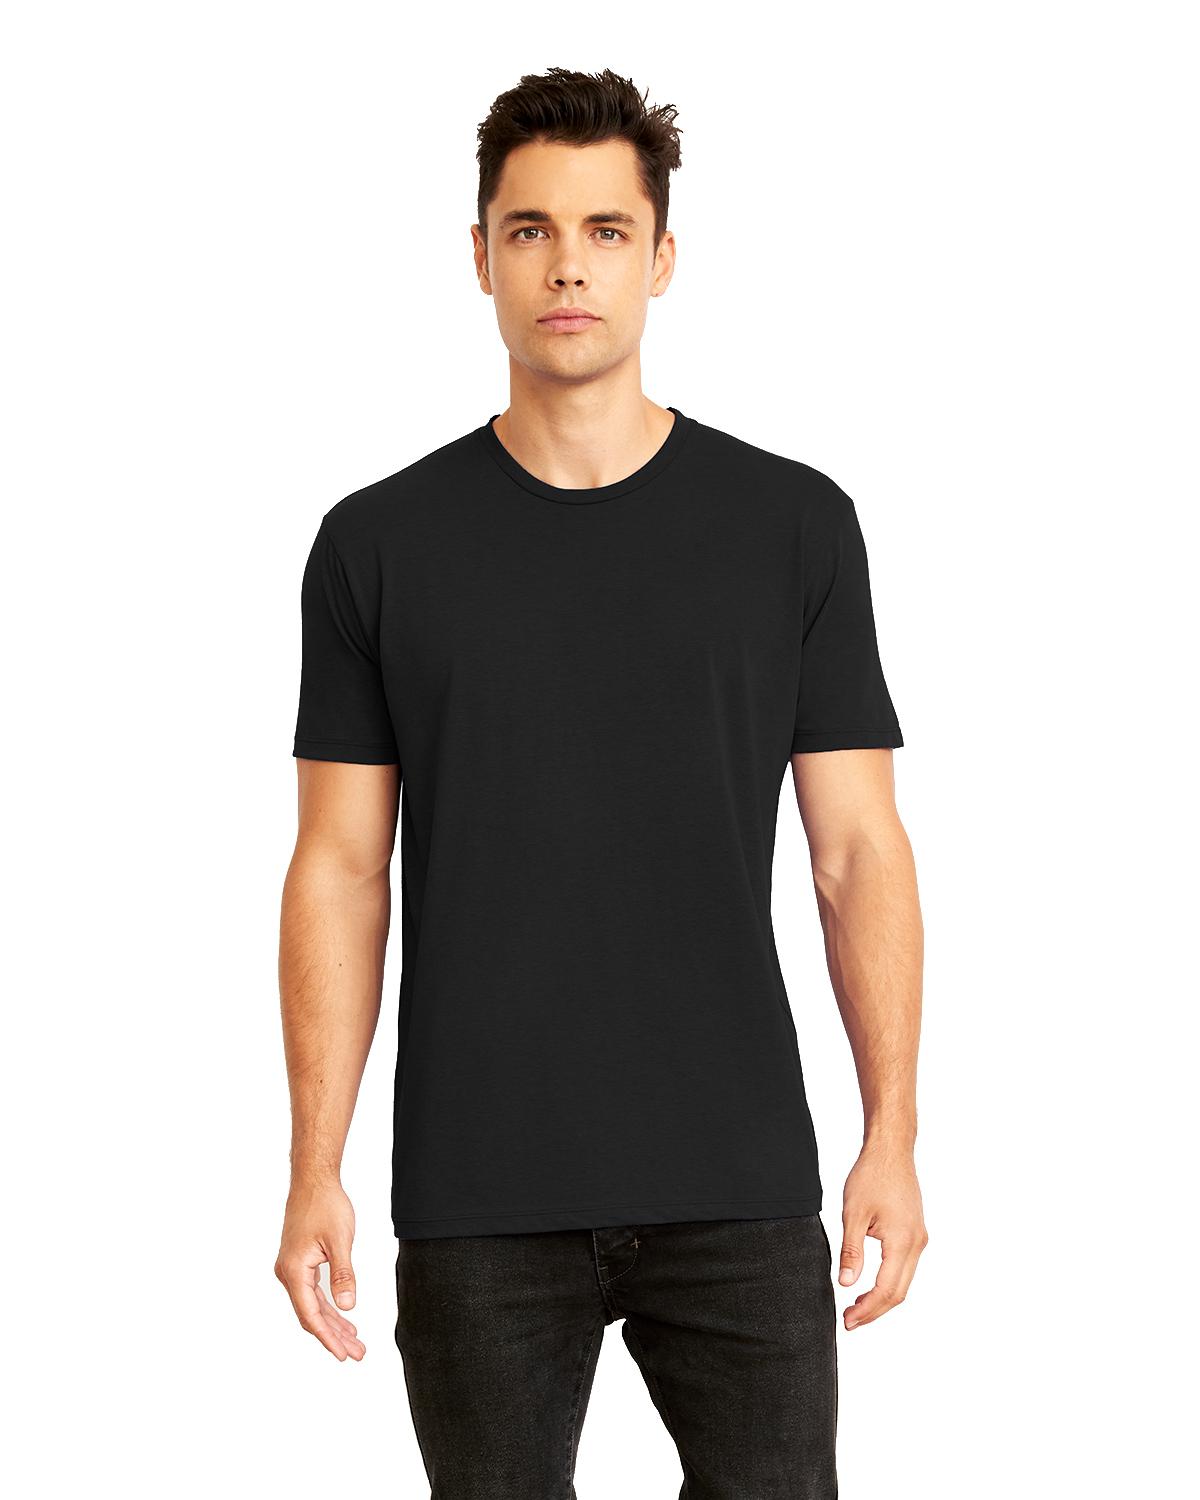 Next Level 4210 Unisex Eco Performance T-Shirt - Shirtmax